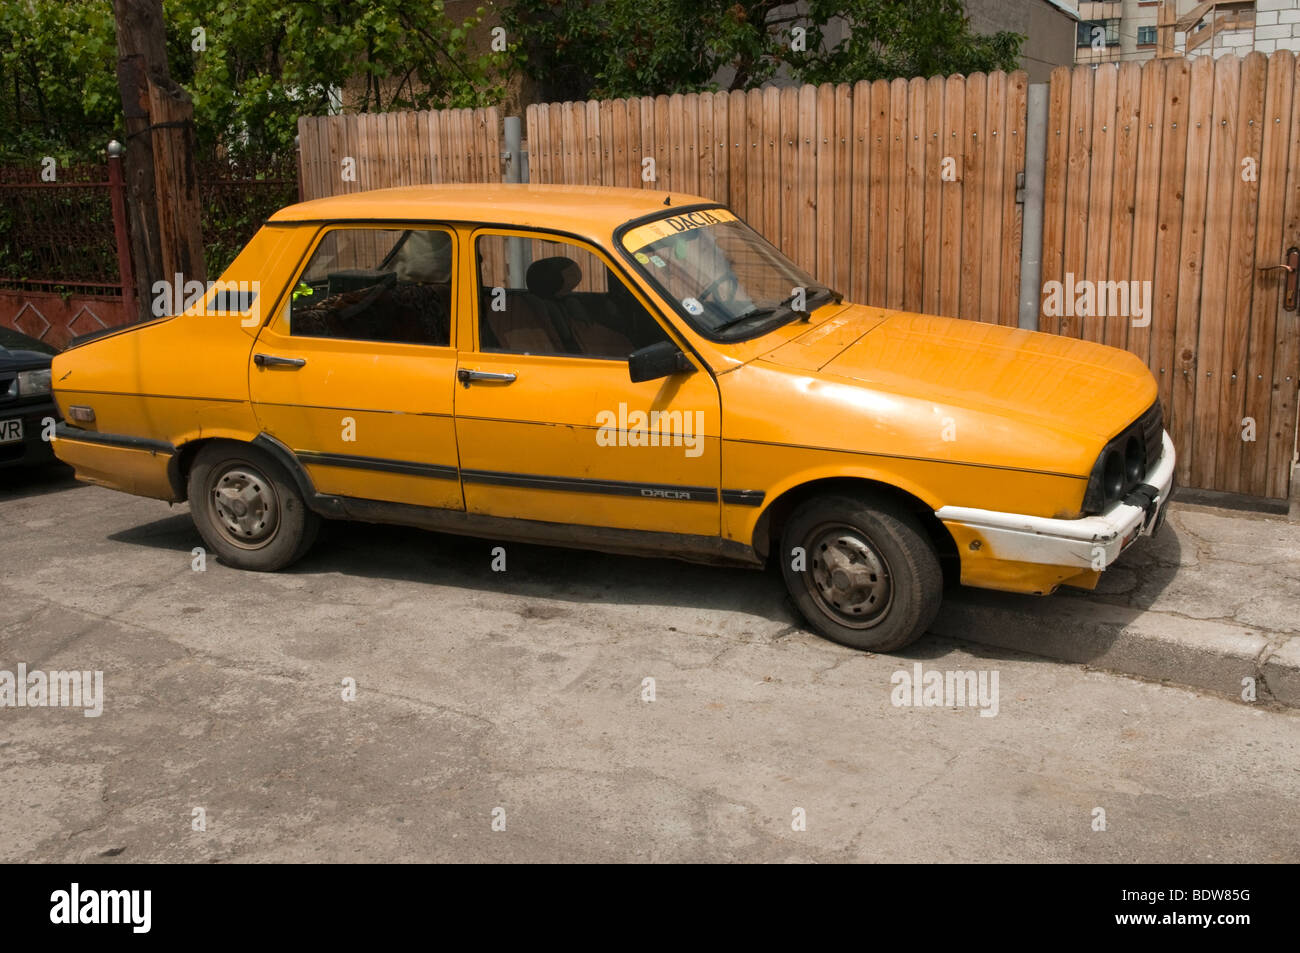 Dacia voiture jaune à Ploiesti Roumanie Europe de l'Est Banque D'Images